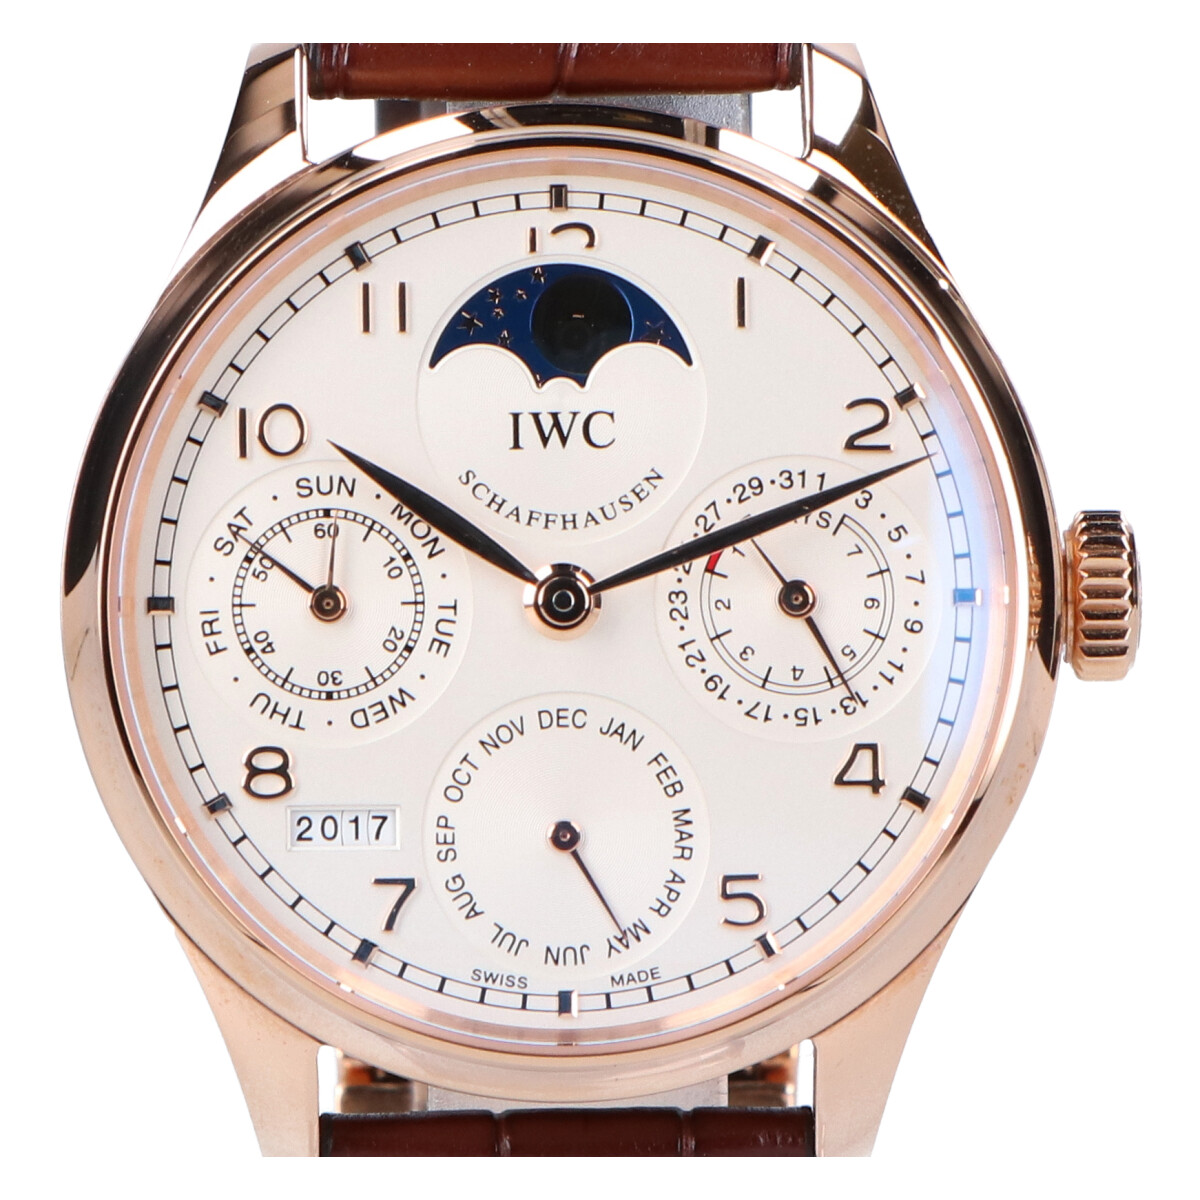 インターナショナルウォッチカンパニーのIW503302 18K ポルトギーゼパーペチュアルカレンダー 自動巻き 腕時計の買取実績です。